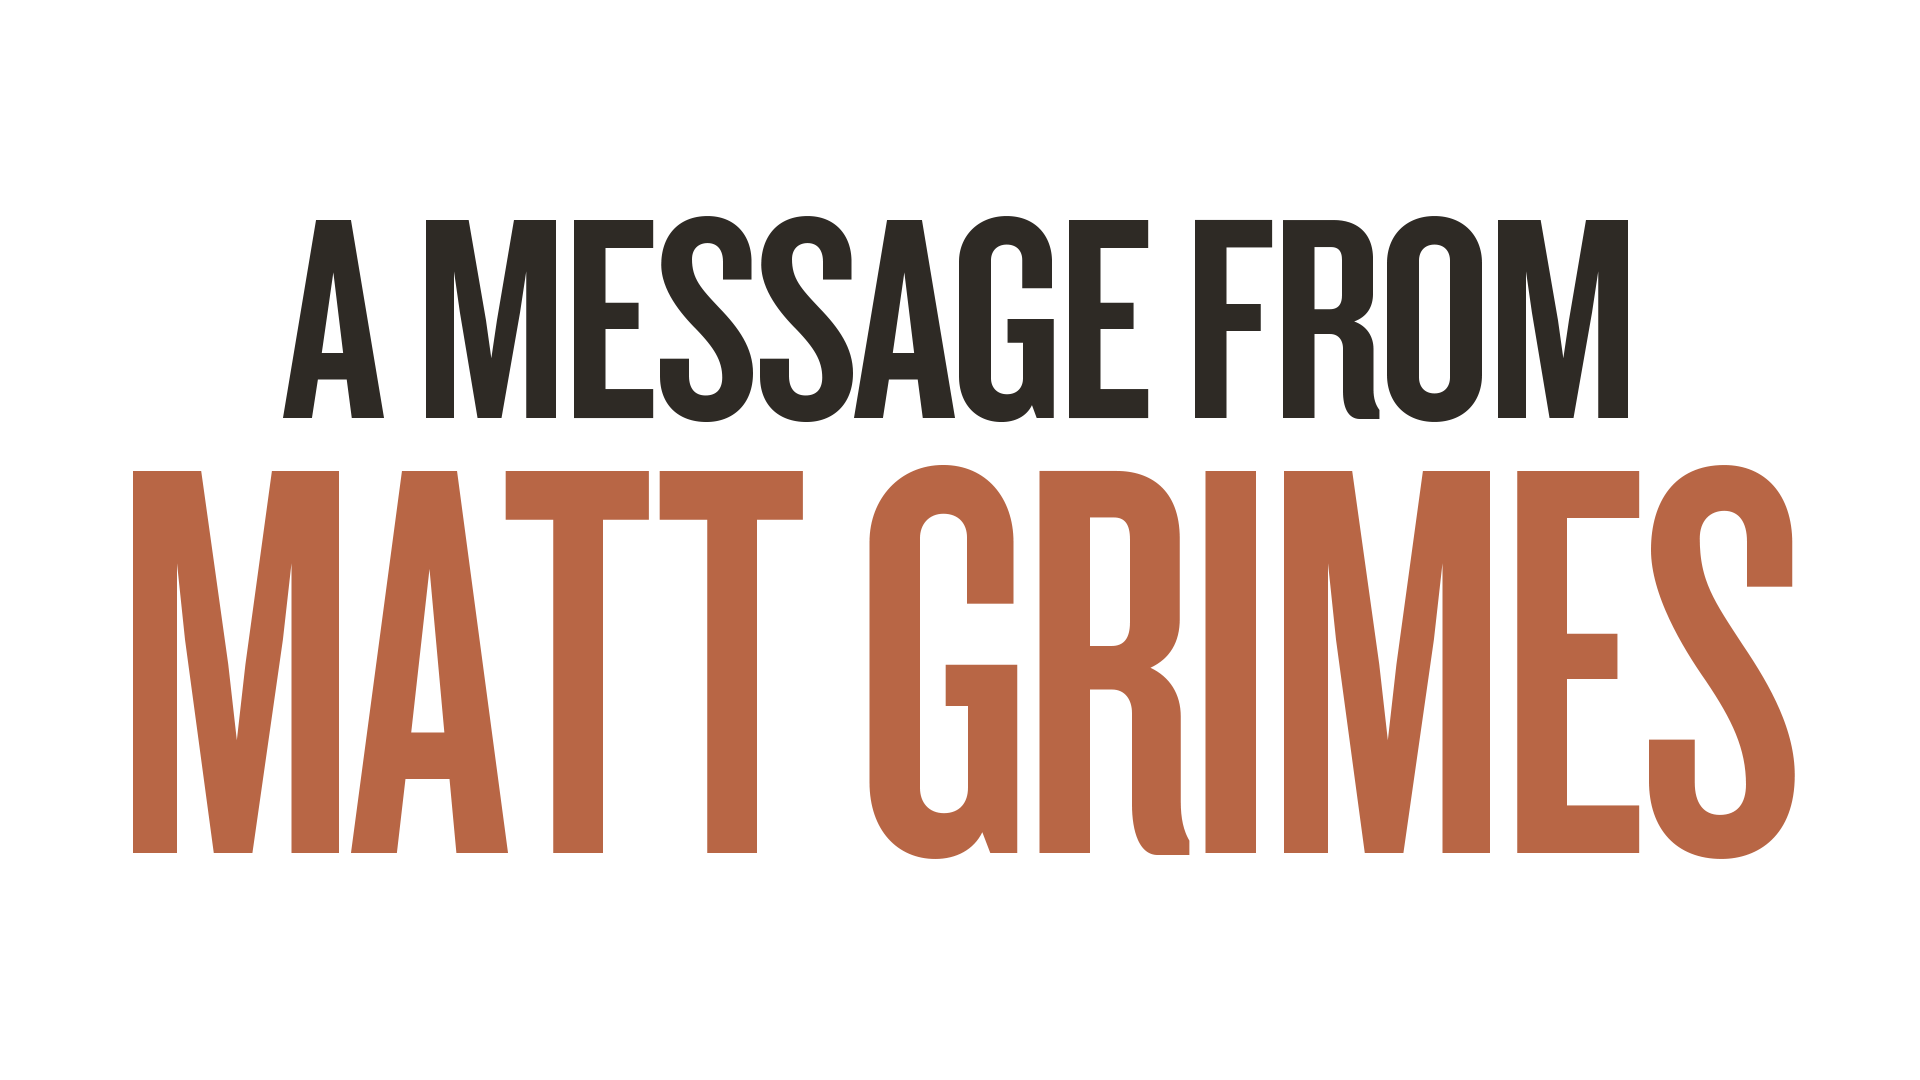 Matt Grimes' Notes